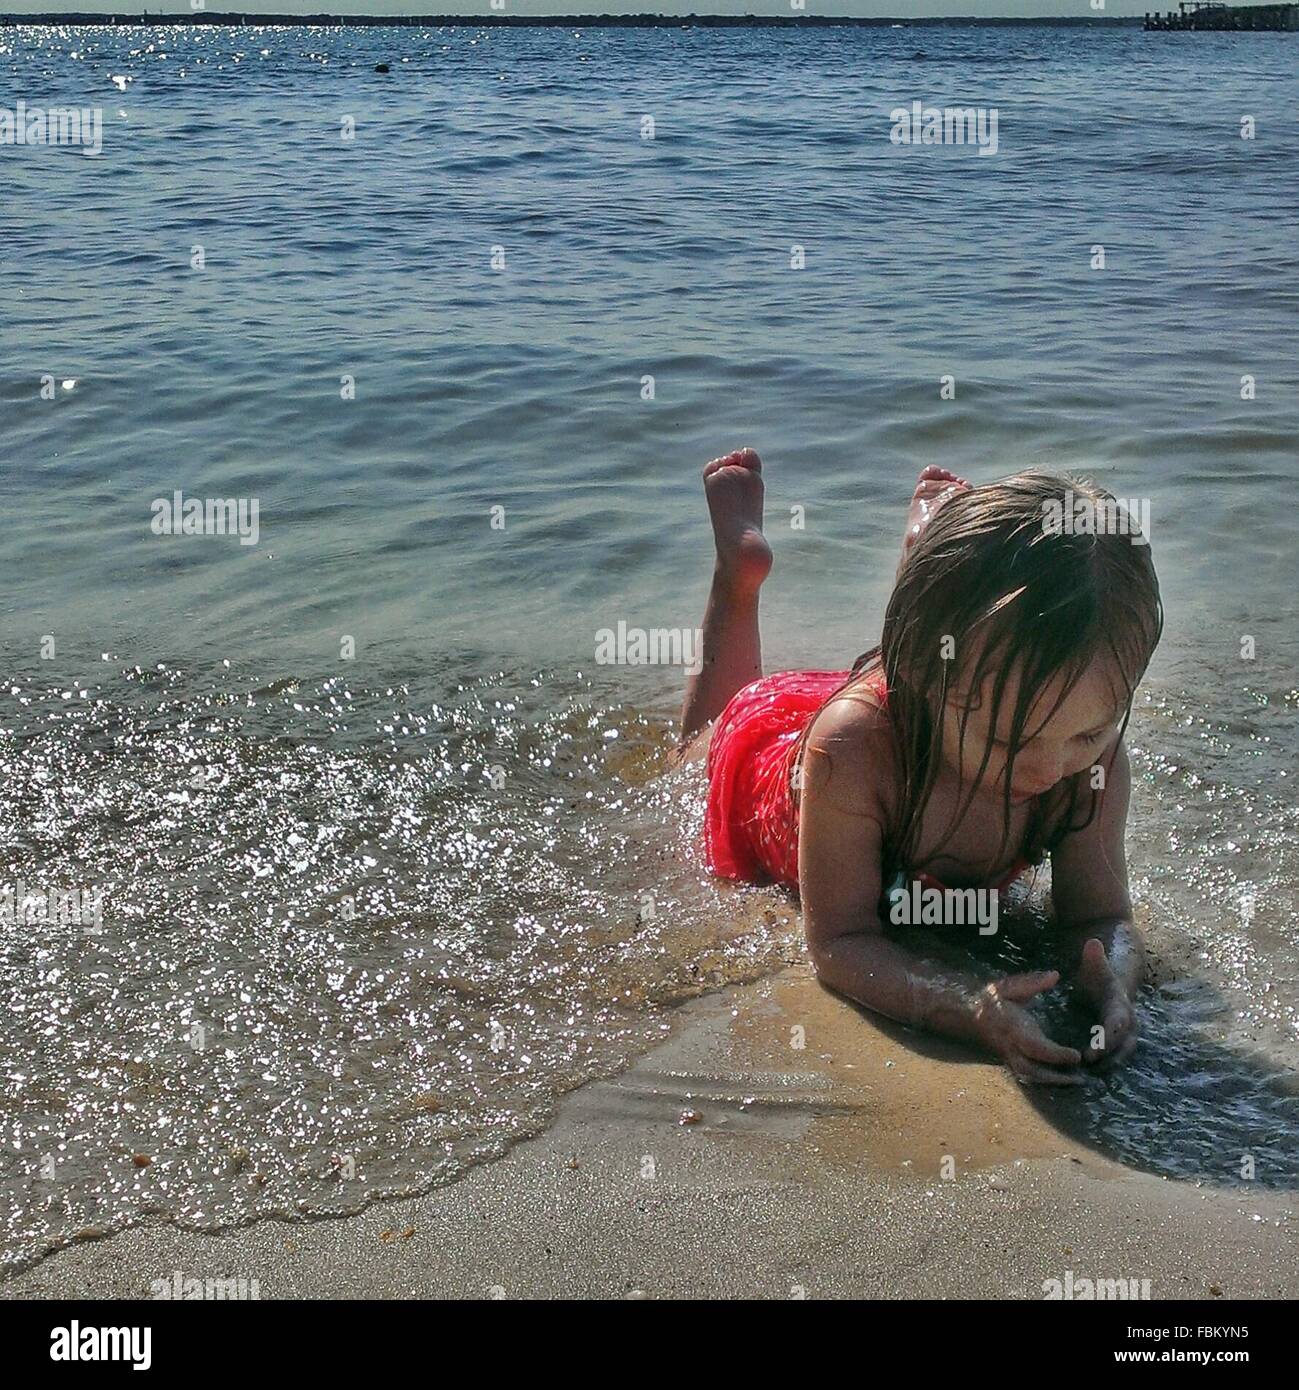 Kleines Mädchen Auf Sand Am Strand Stockfotografie Alamy